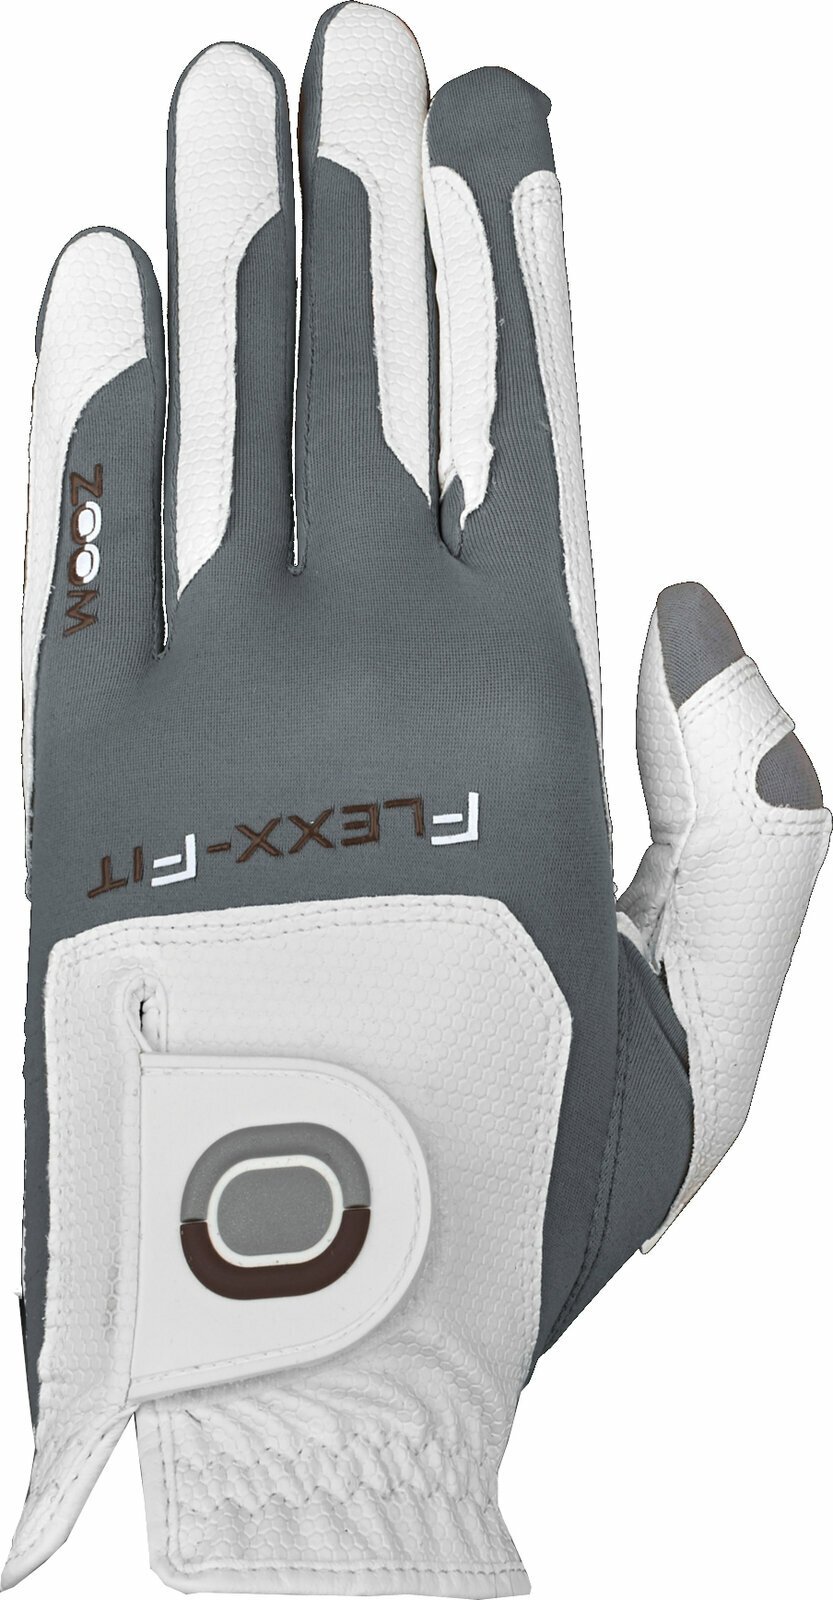 Handschuhe Zoom Gloves Weather Mens Golf Glove White/Silver RH